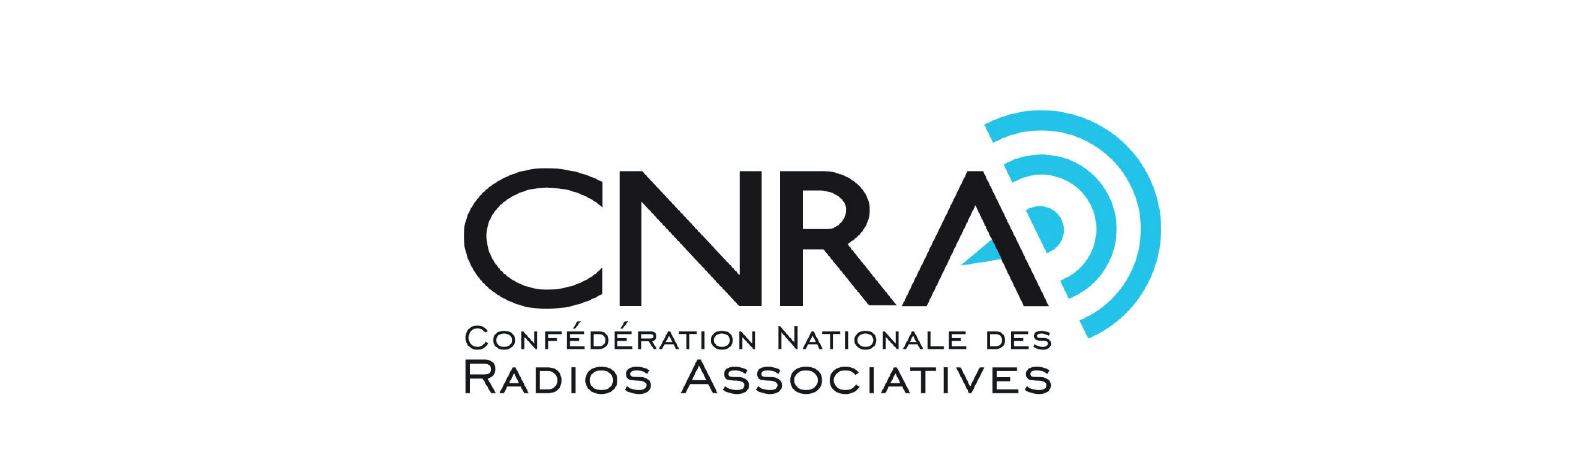 CNRA : des États Généraux en octobre à Nancy